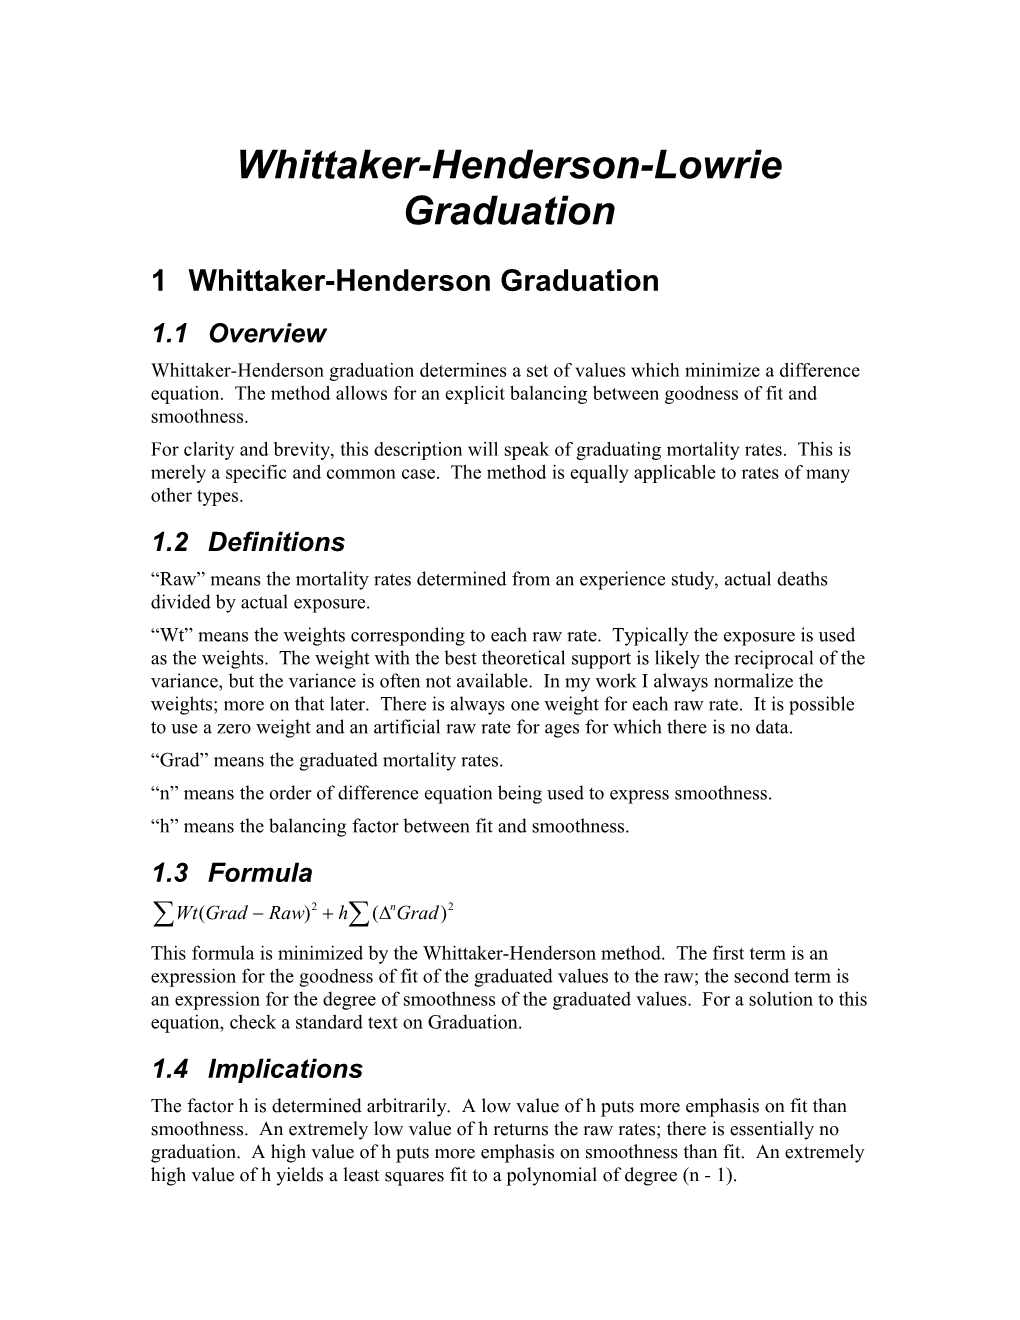 Whittaker-Henderson-Lowrie Graduation